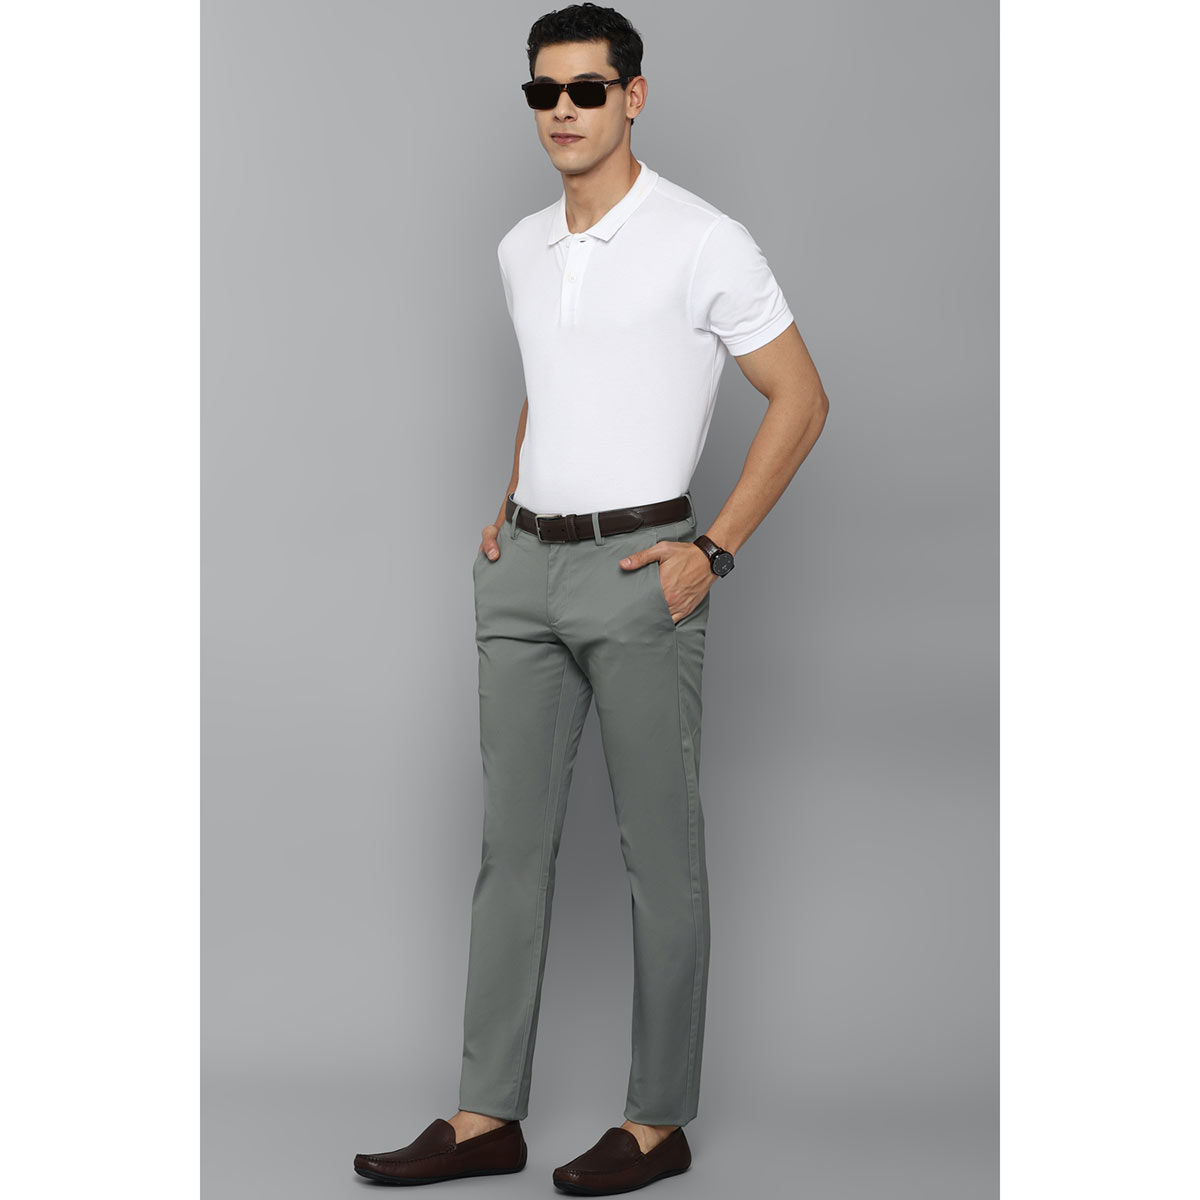 Allen Solly Regular Fit Men Grey Trousers - Buy Allen Solly Regular Fit Men  Grey Trousers Online at Best Prices in India | Flipkart.com